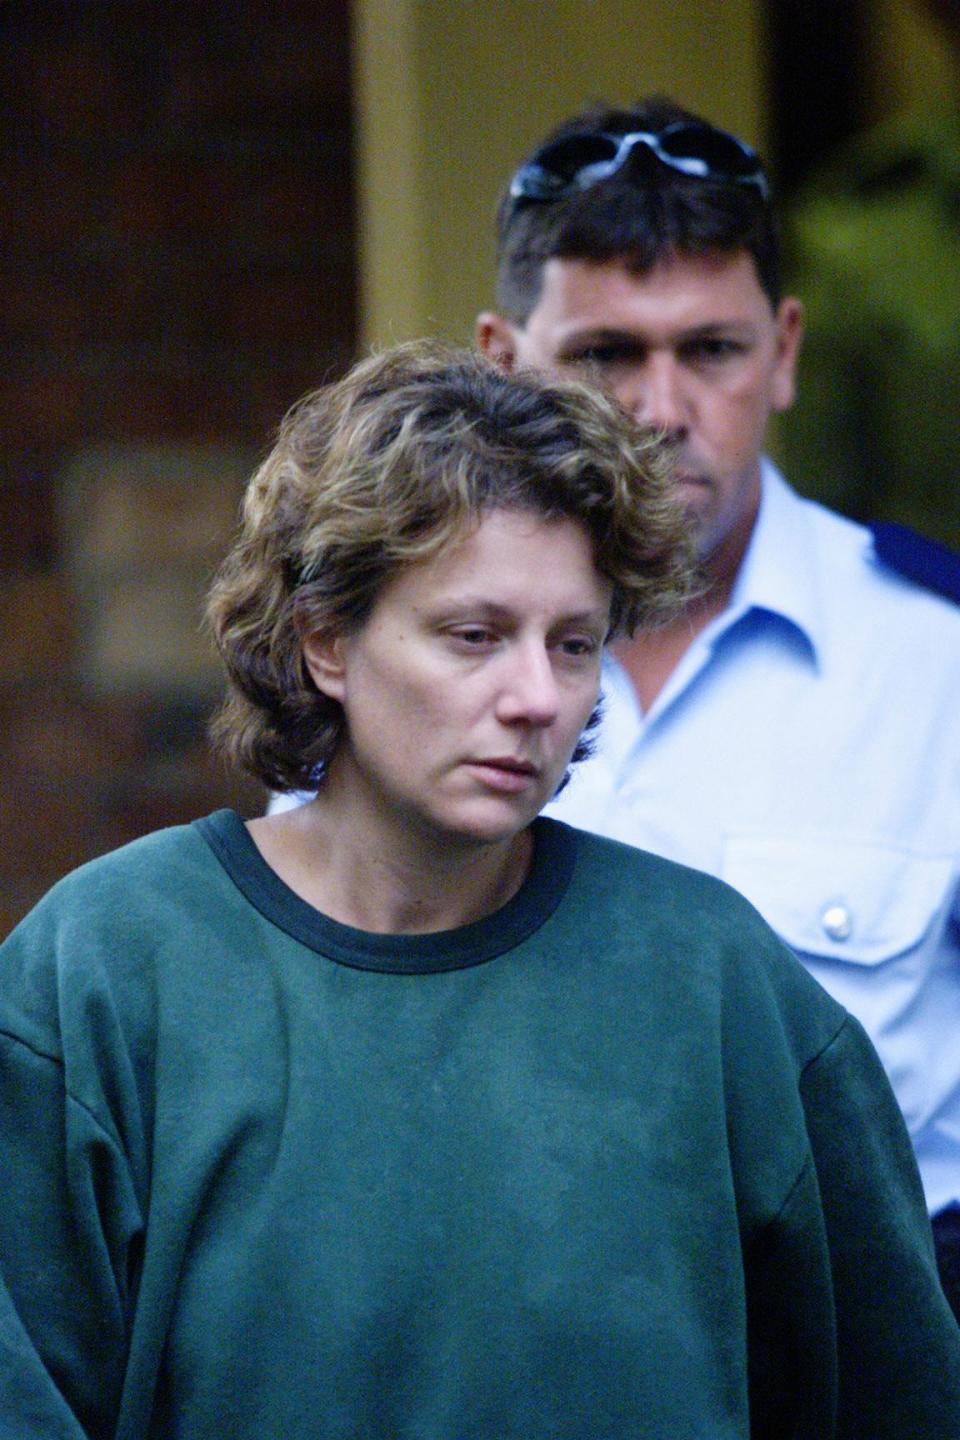 澳洲女子福比格（Kathleen Megan Folbigg）2003年被控殺害自己4名孩子，20年後案情逆轉。此為2004年時福比格出庭資料畫面。 圖片來源：Fairfax Media/ Getty Images 